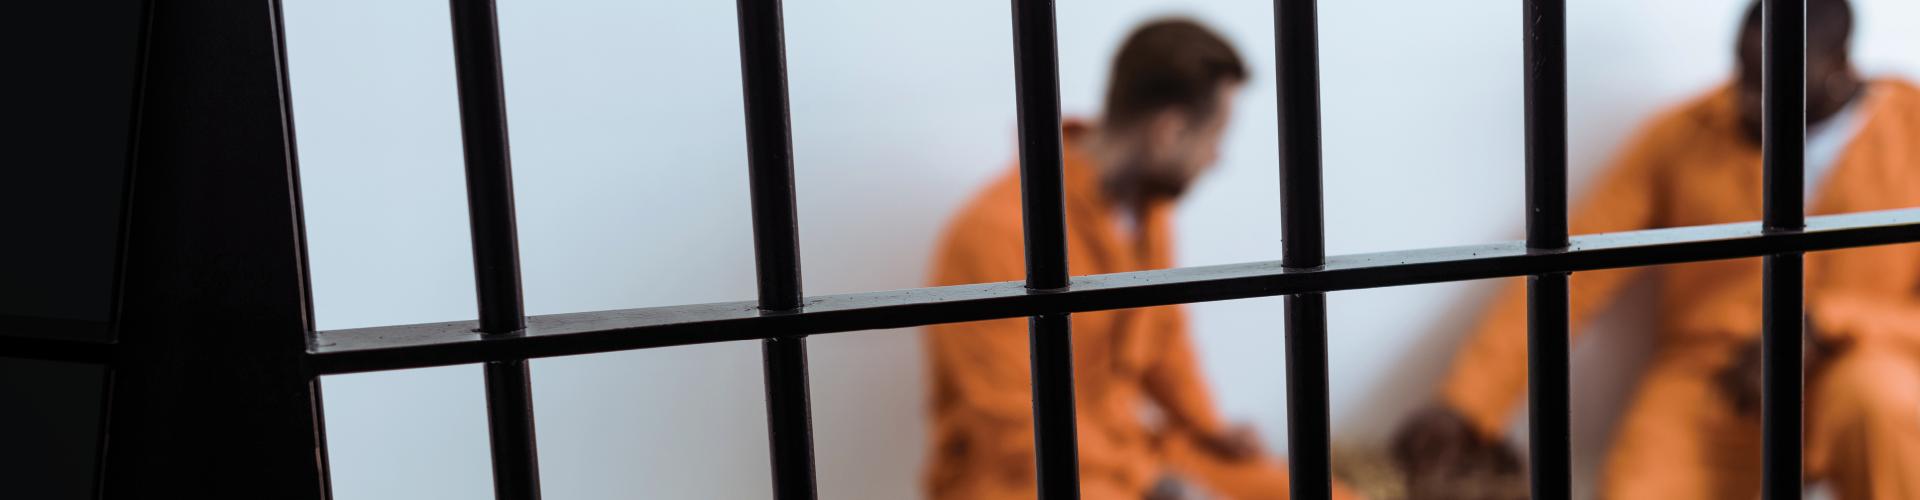 Inmates in orange clothing behind bars